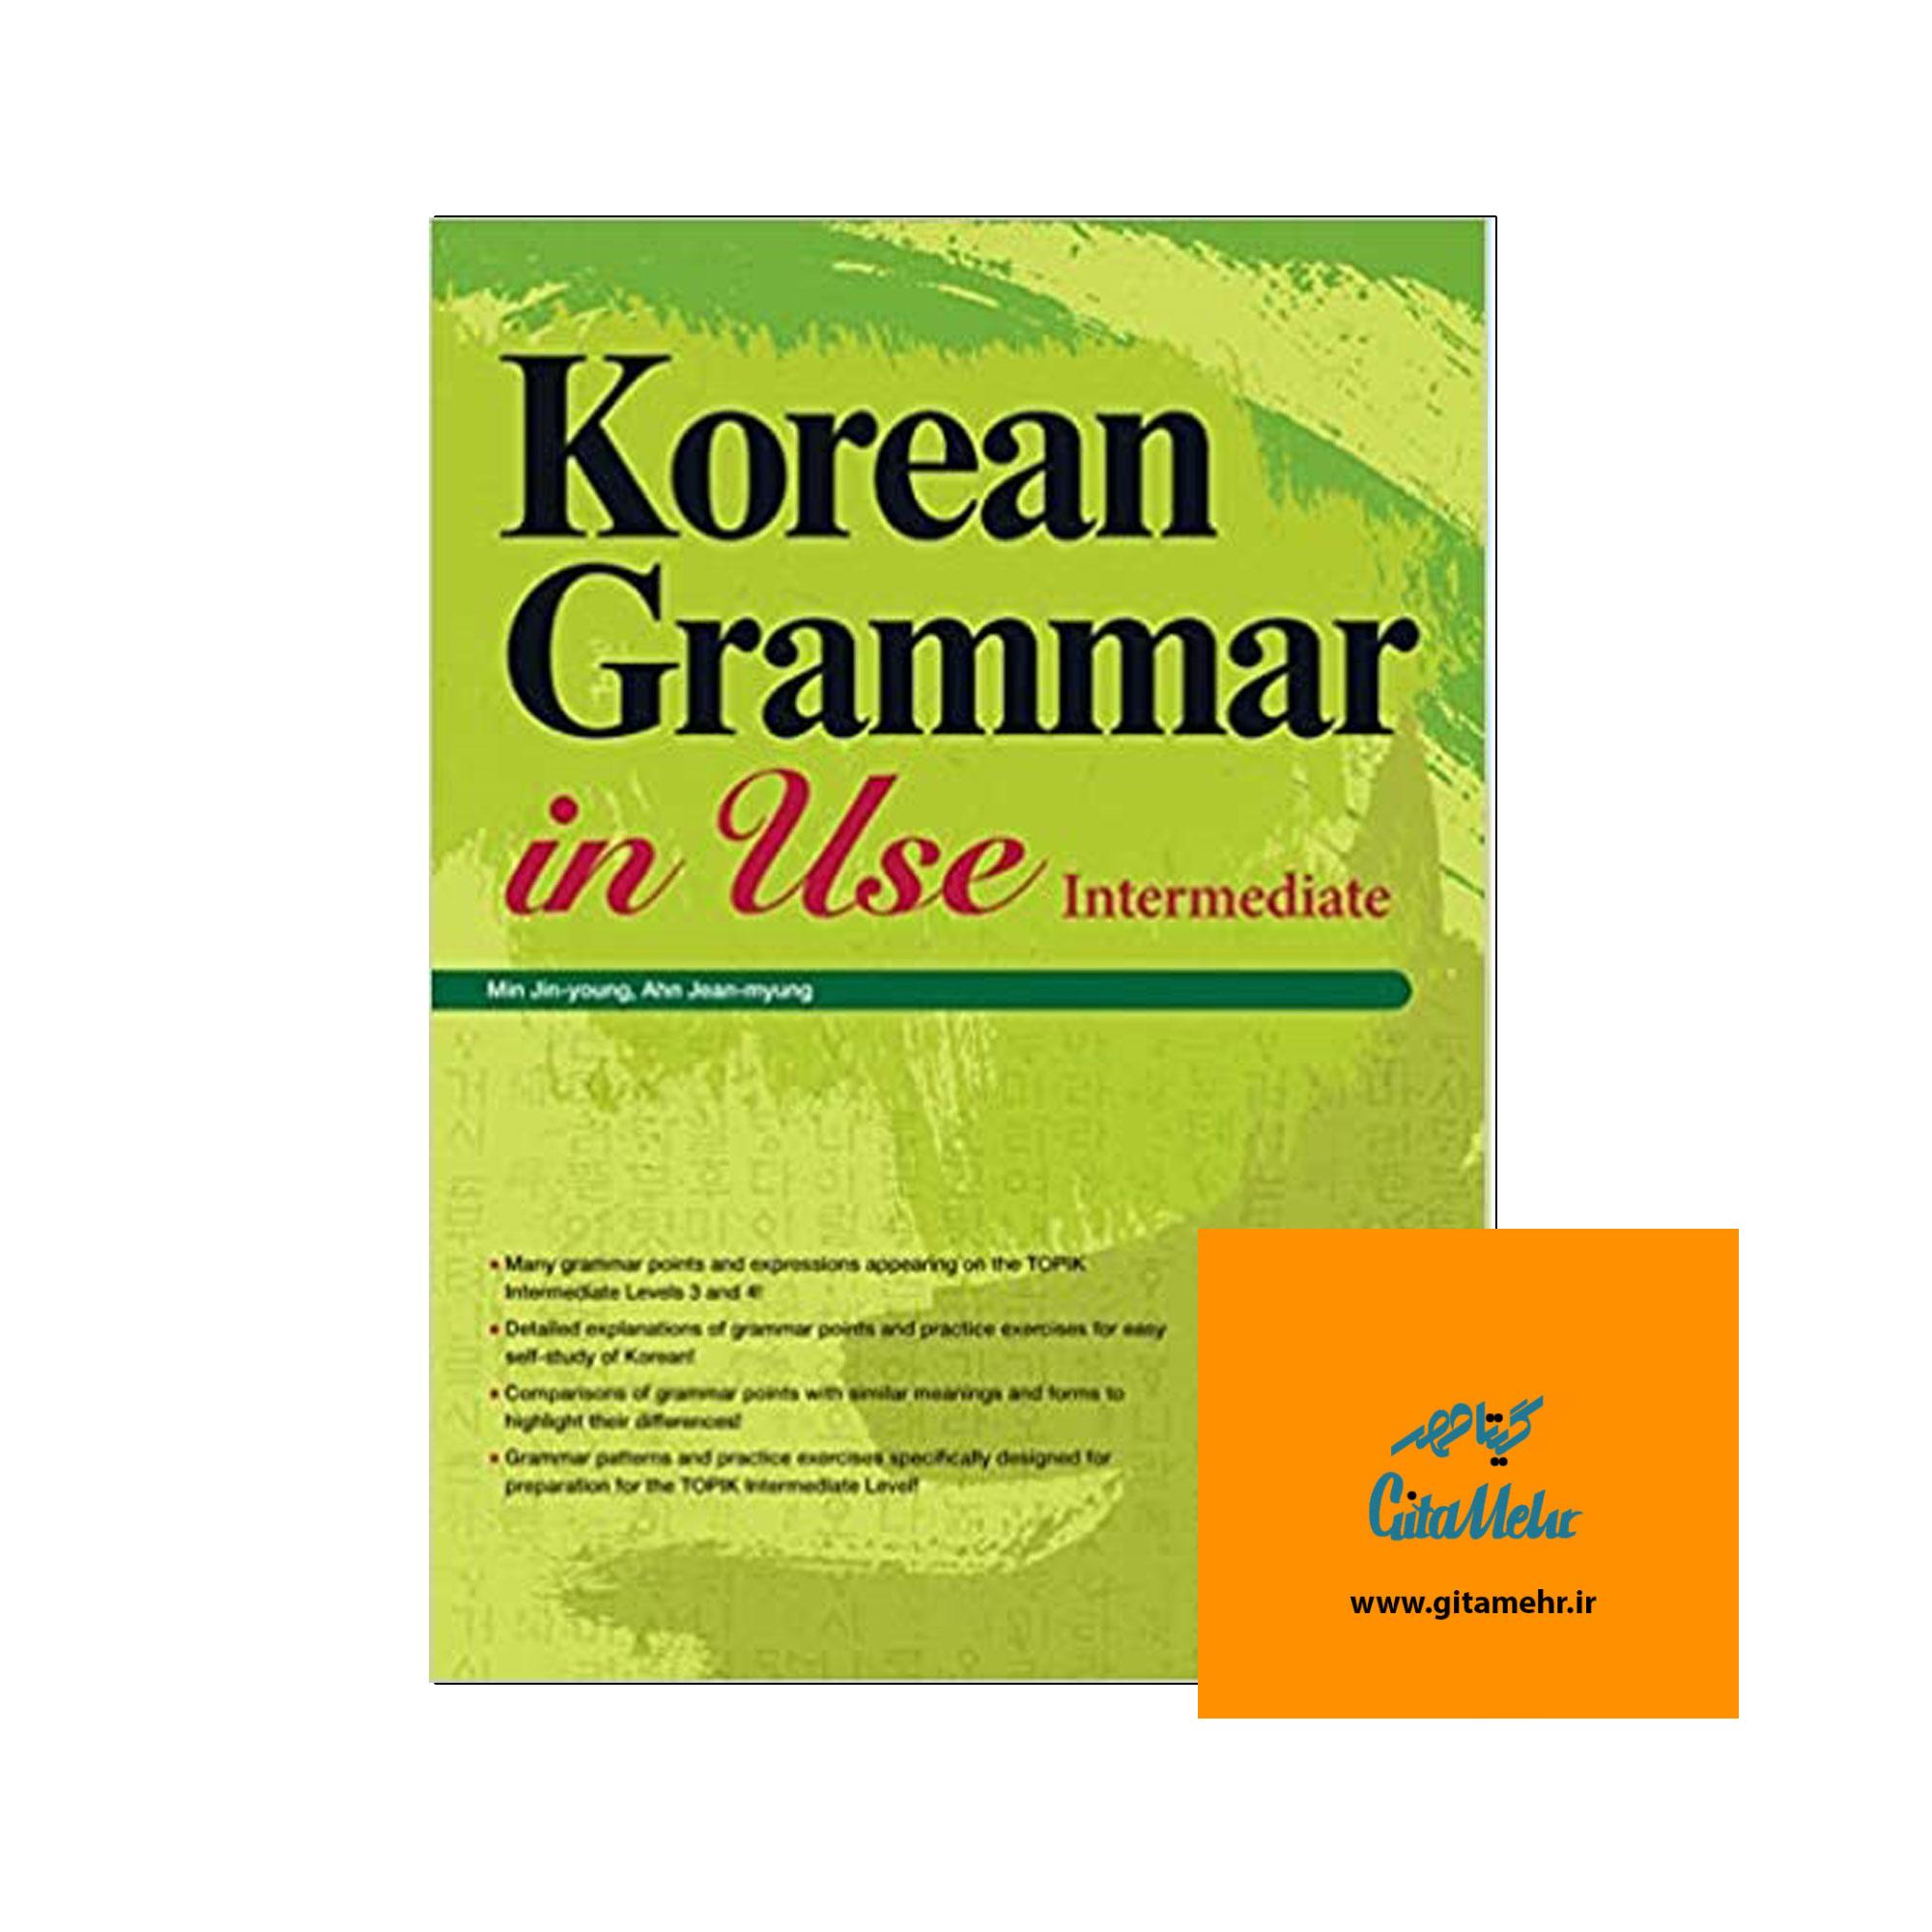 korean grammar in use intermediate daa9d8aad8a7d8a8 da86d8a7d9be d8b1d986daafdb8c 65f087bf03d17